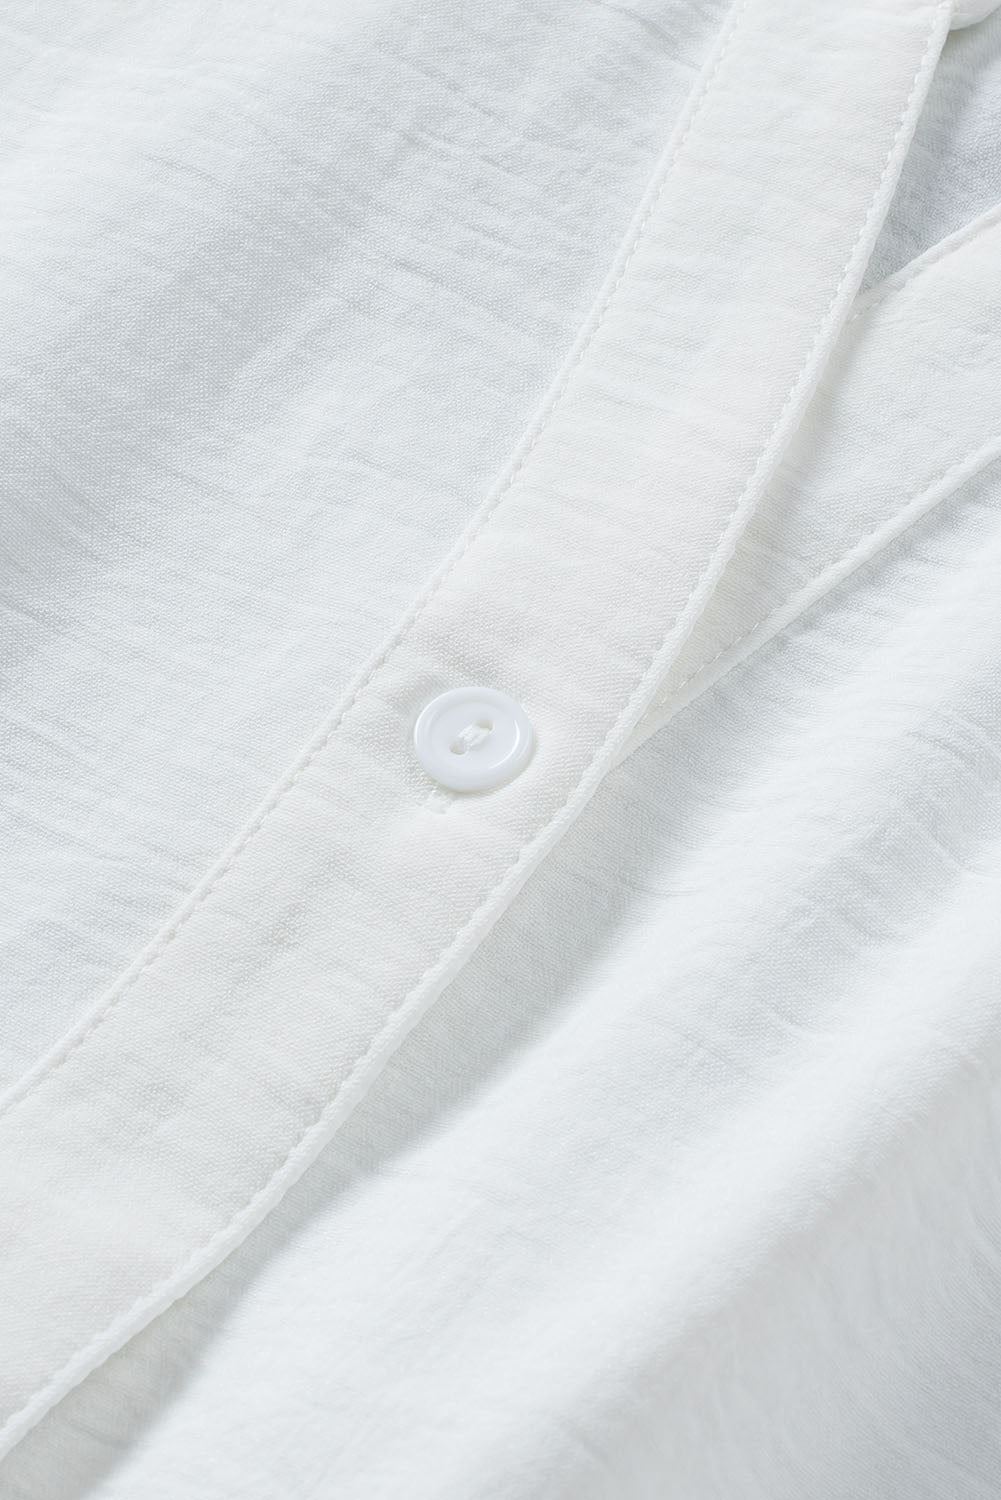 Weißes, ärmelloses Hemd mit geteiltem Ausschnitt und Kordelzug an der Taille